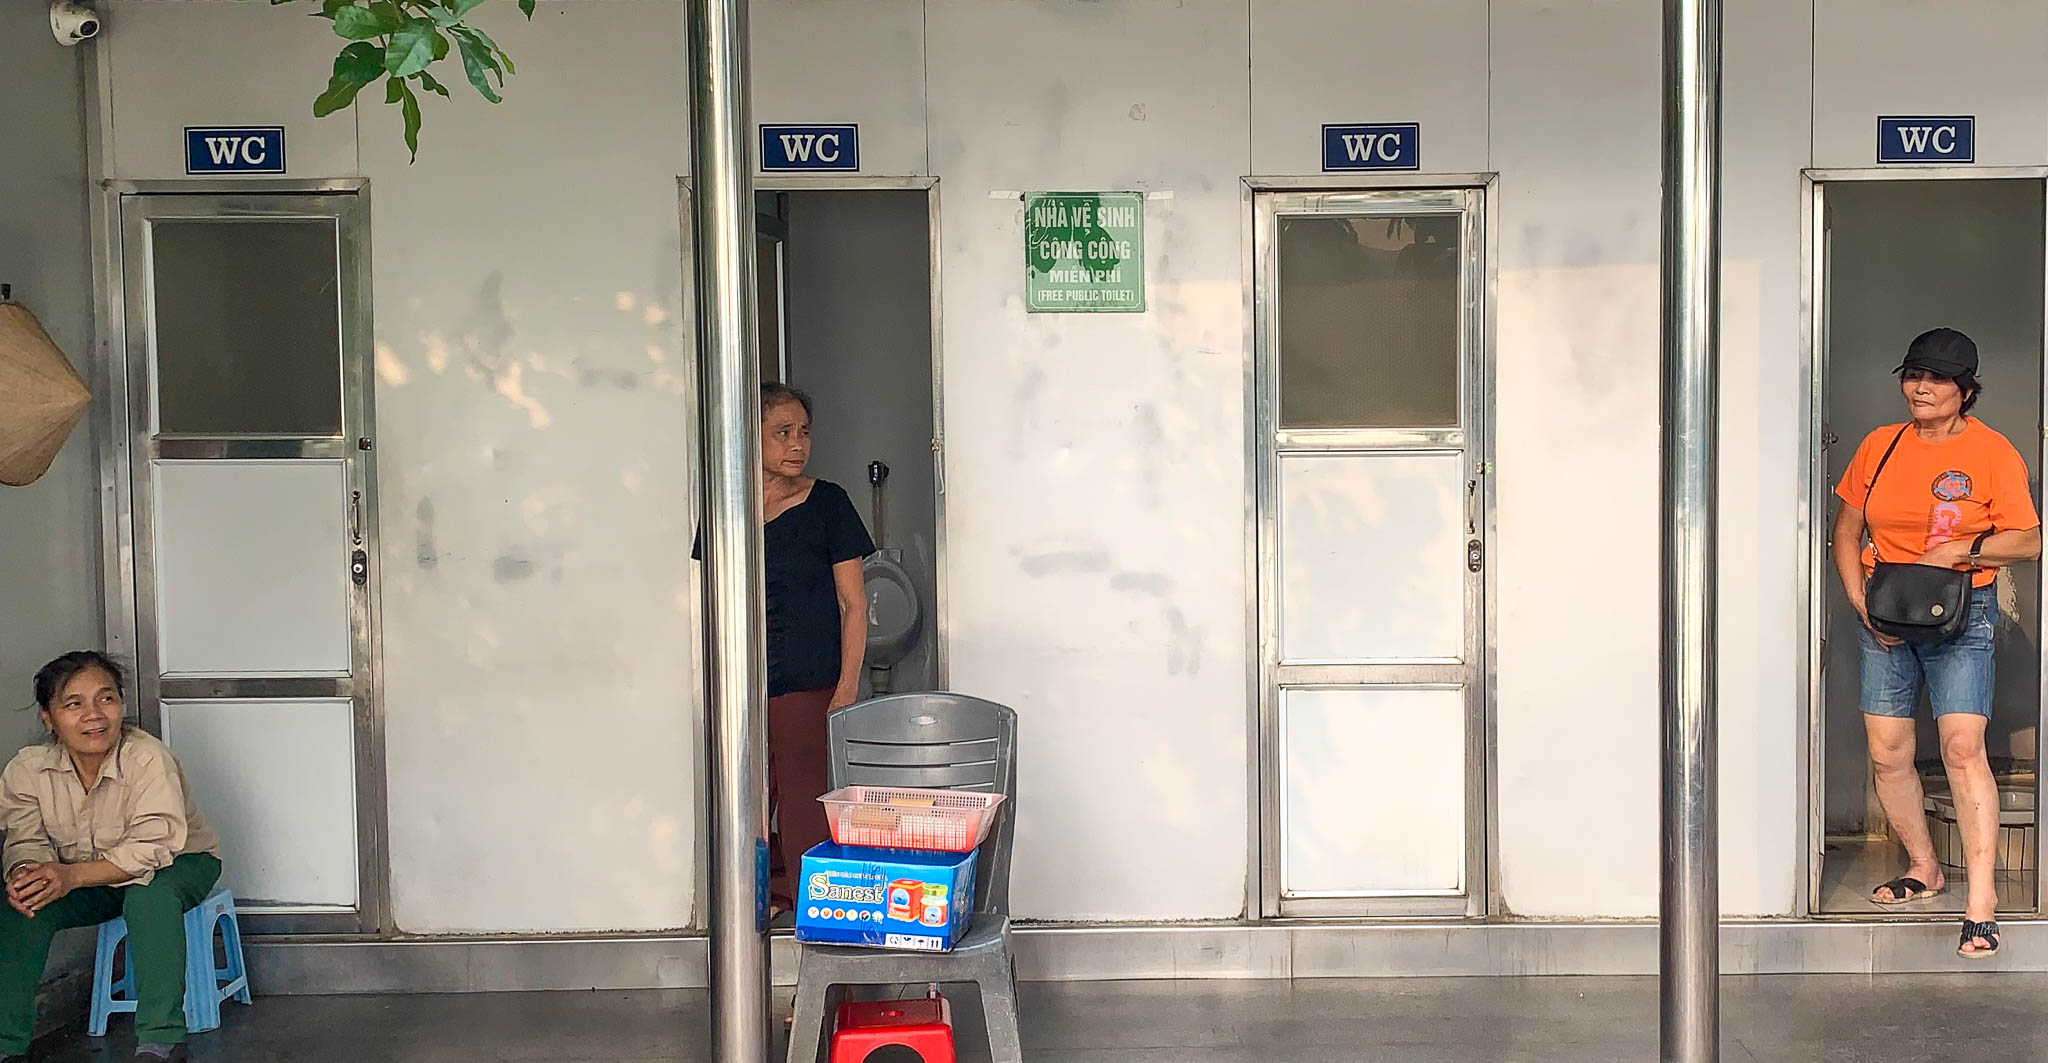 Nhà vệ sinh công cộng miễn phí vẫn thu tiền ở Hà Nội - Báo Công an ...